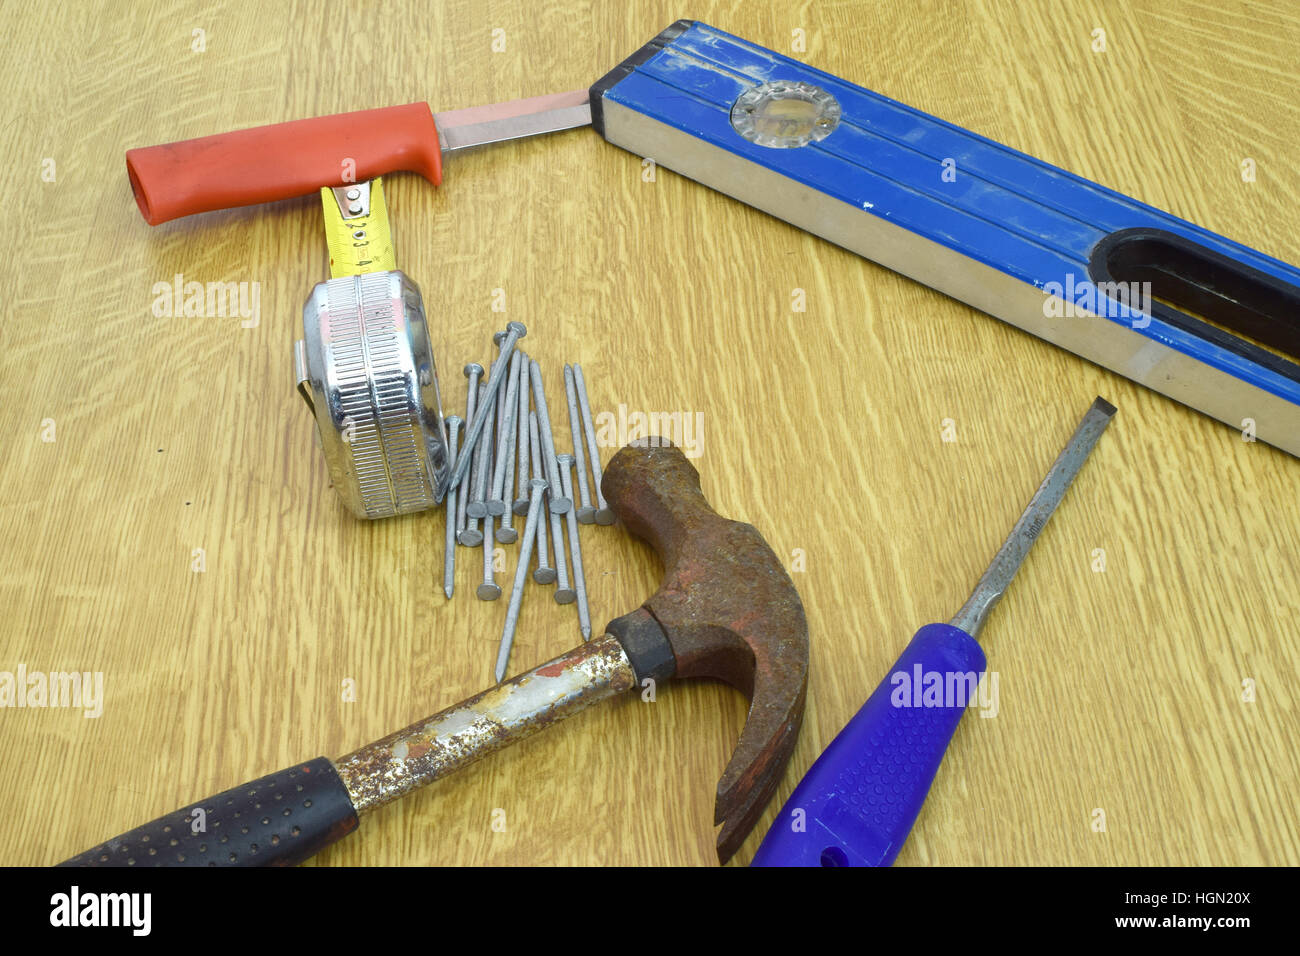 Hammer, Nägel, Messer, Lineal, Wasserwaage und Meißel auf den Tisch. Stockfoto